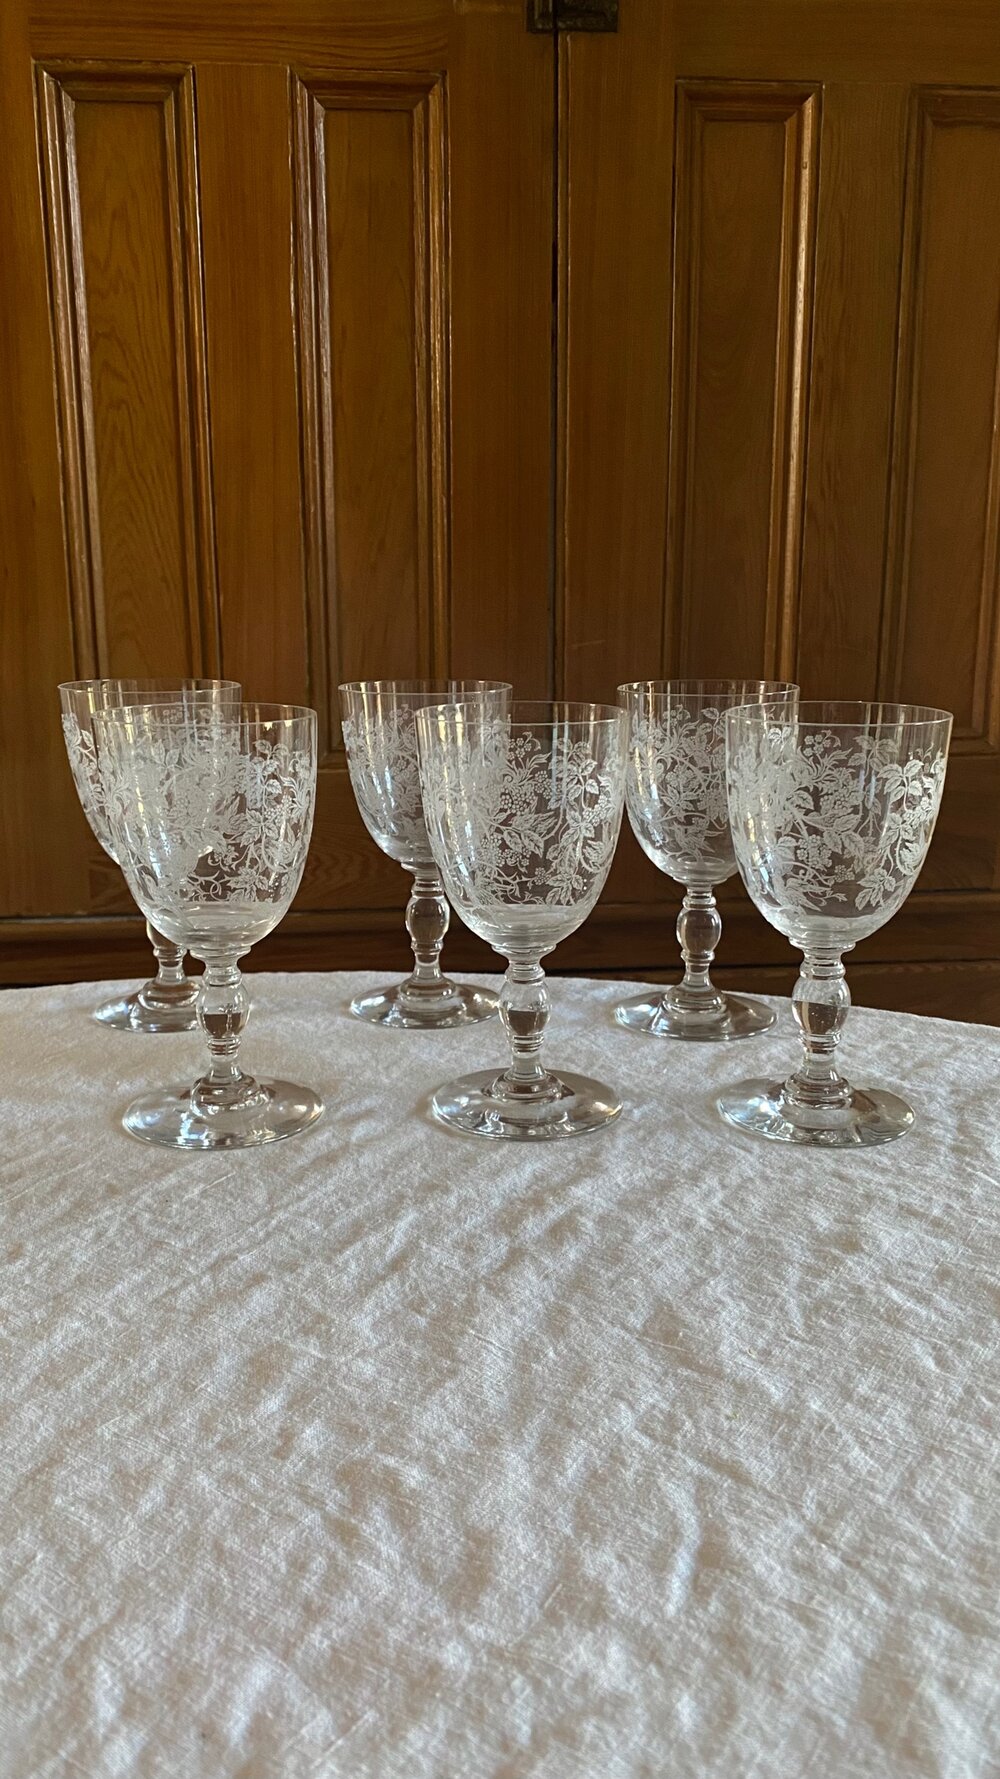 Vintage Stemware Cut Glass Crystal Goblets Wine Glasses Short Stem